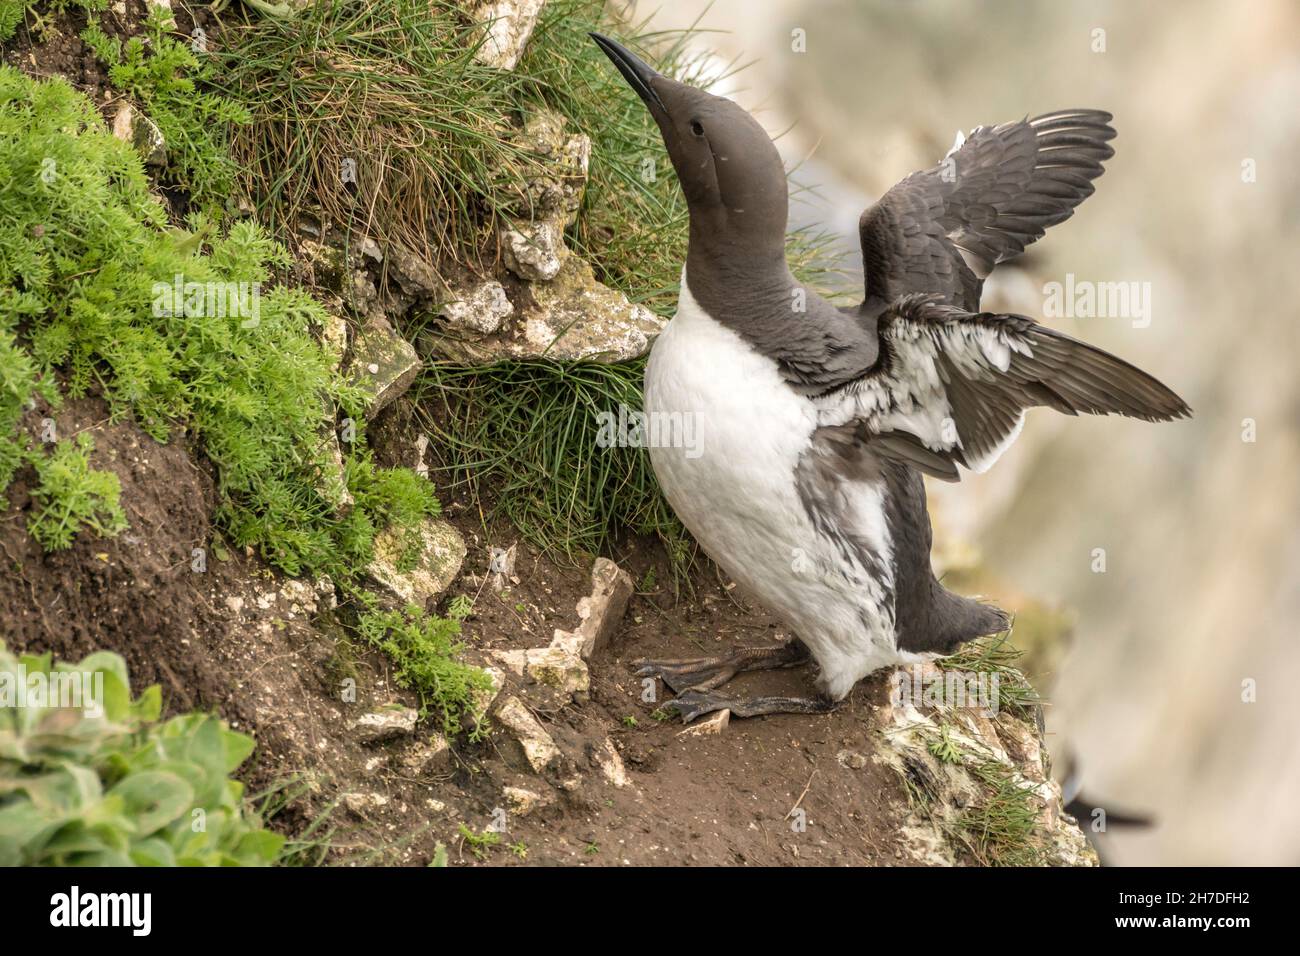 Die Guillemot (Gemeine Murre) eine Seevögelfamilie, die im Sommer an Land kommt, um sich zu brüten. Stockfoto